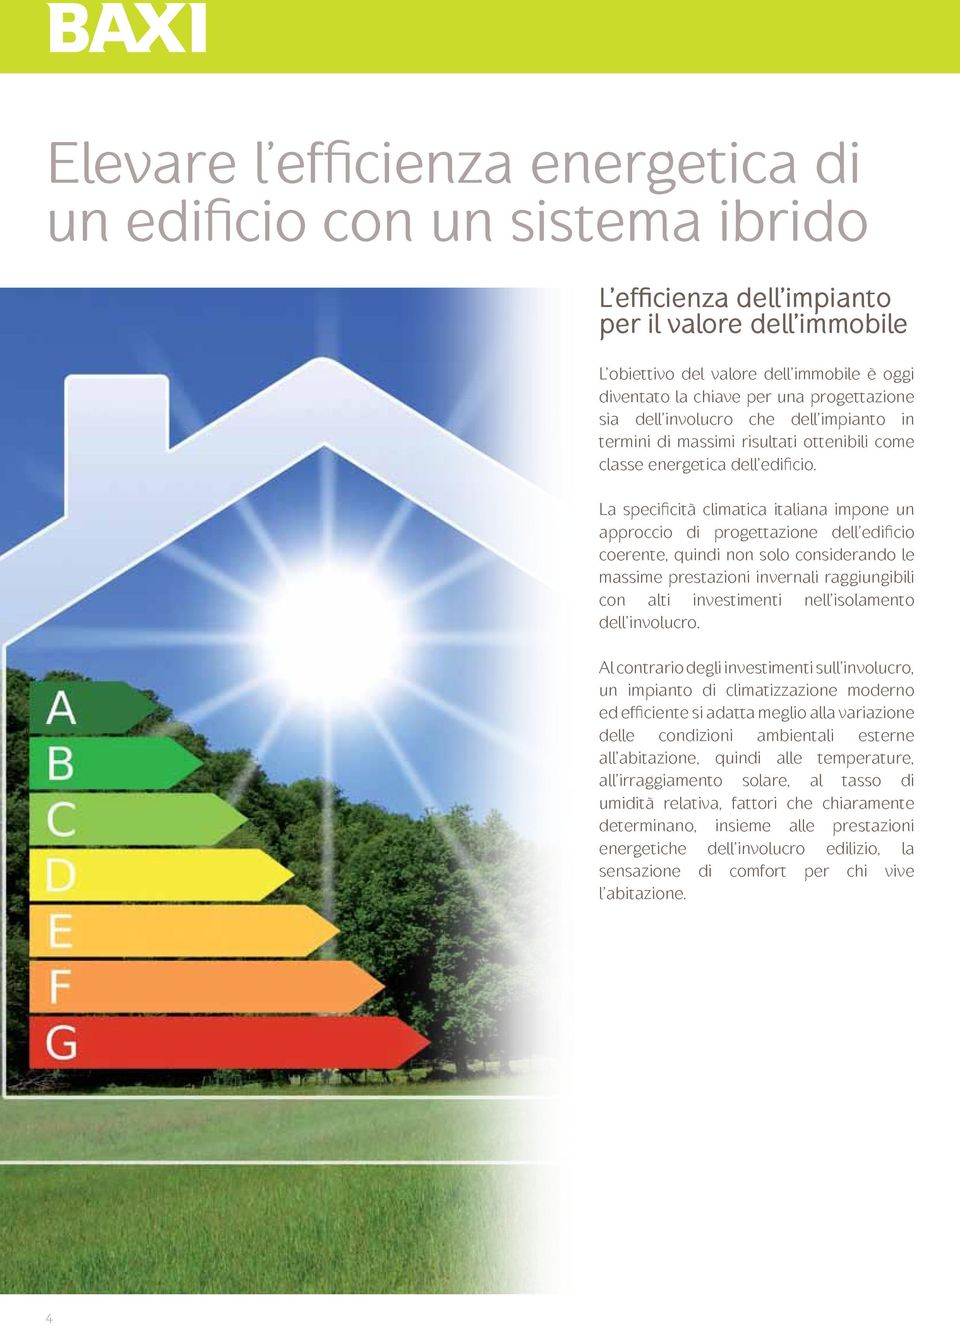 La specificità climatica italiana impone un approccio di progettazione dell edificio coerente, quindi non solo considerando le massime prestazioni invernali raggiungibili con alti investimenti nell